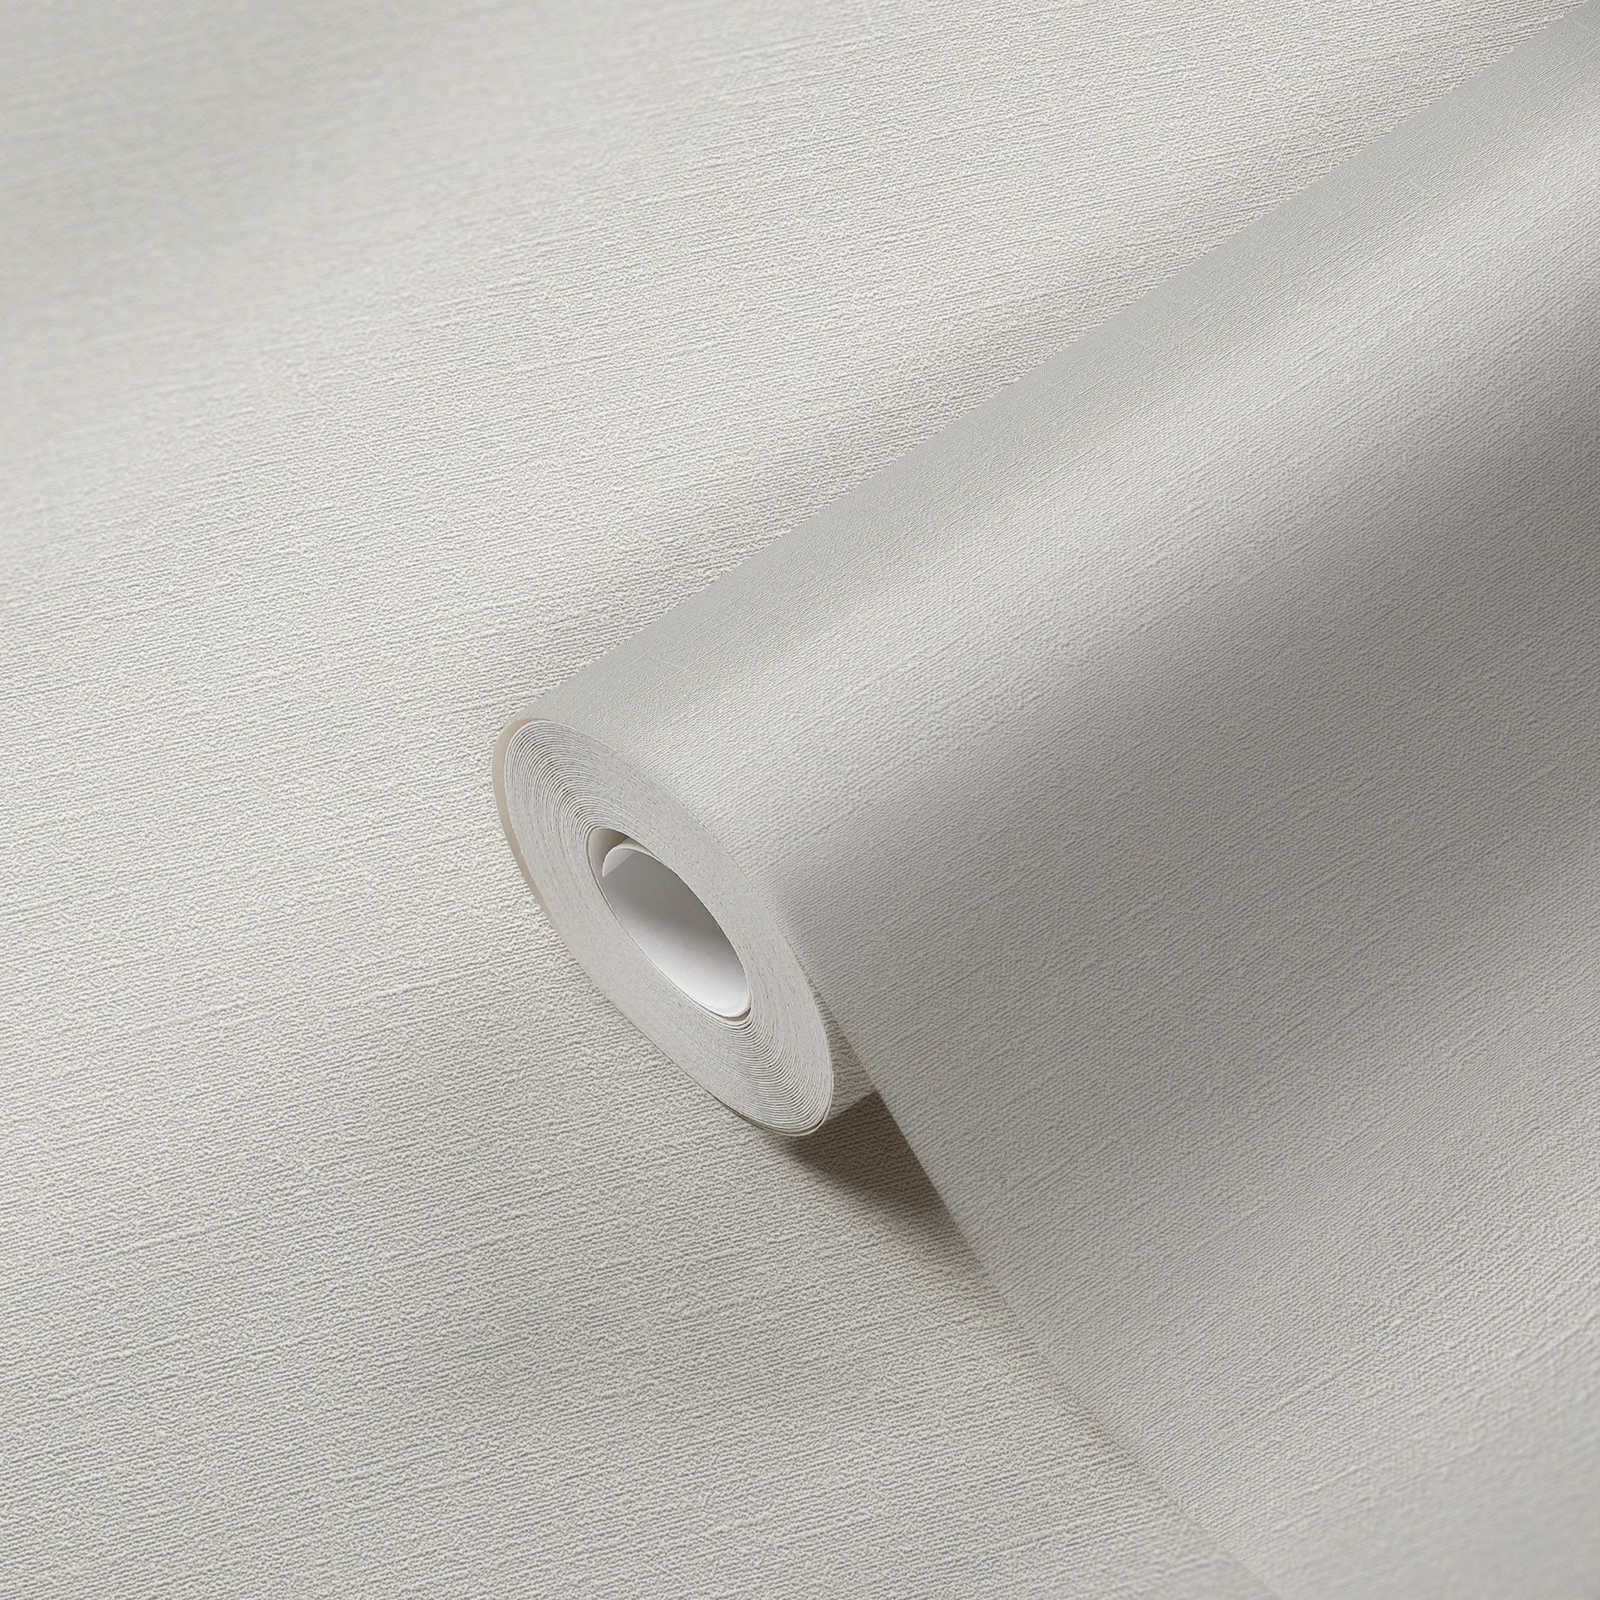             Papel pintado de textura fina sin PVC - gris, blanco
        